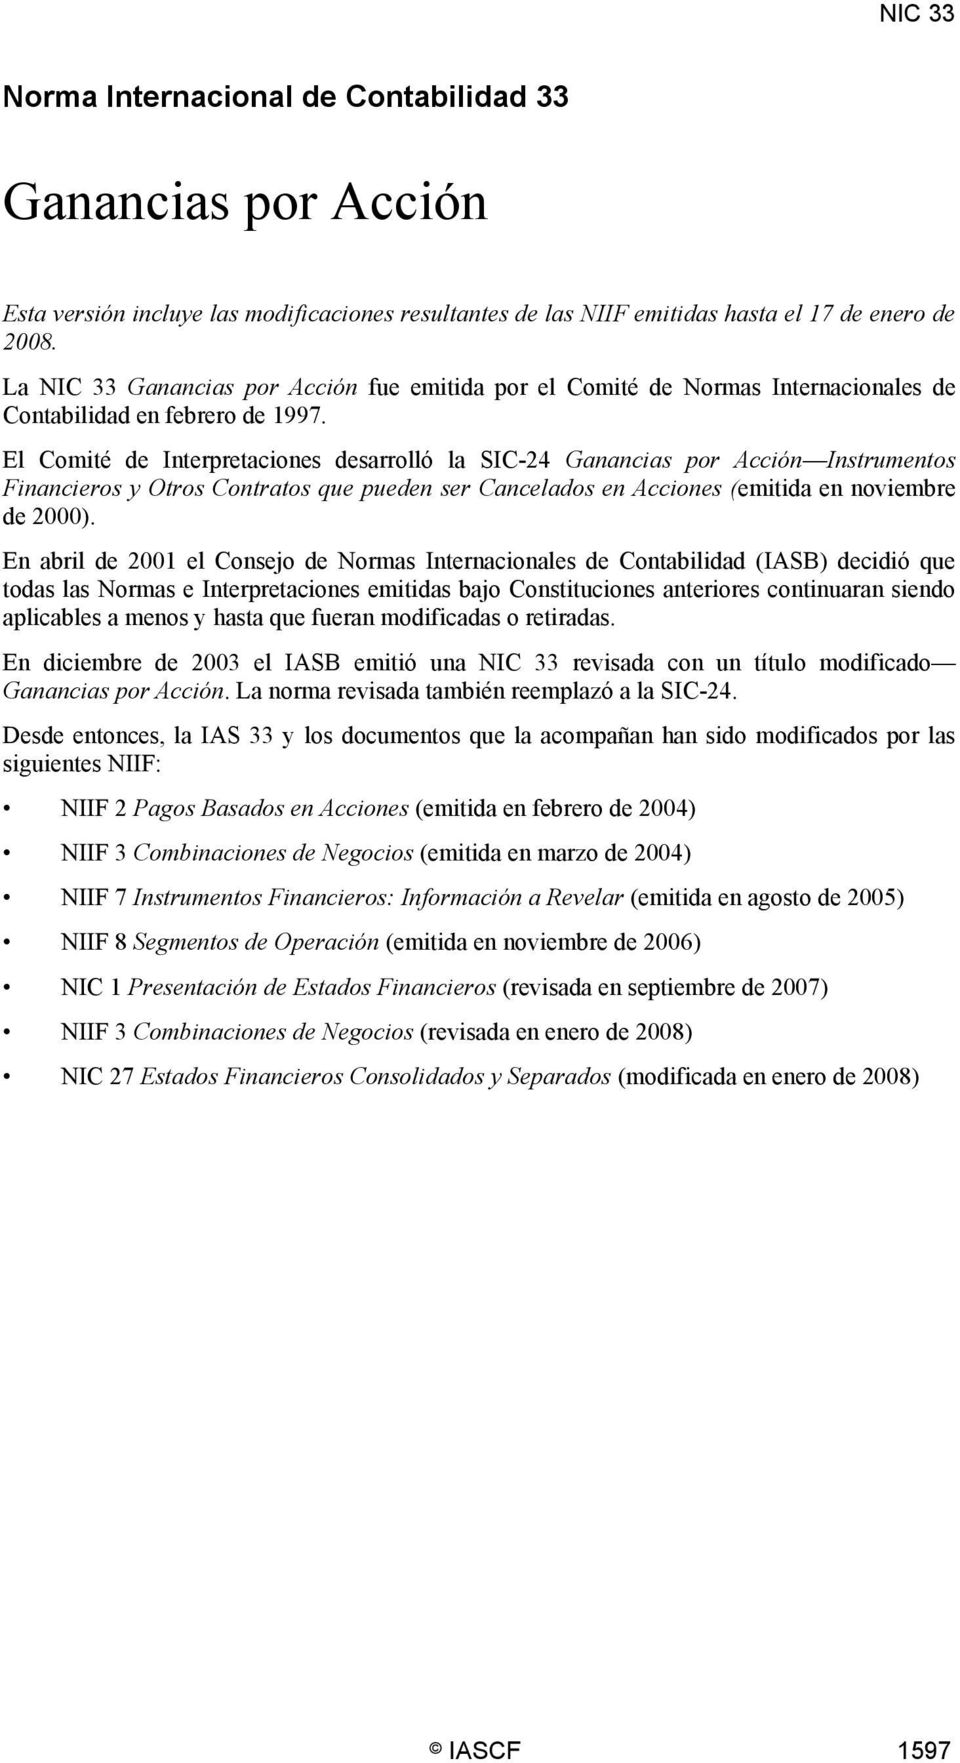 El Comité de Interpretaciones desarrolló la SIC-24 Ganancias por Acción Instrumentos Financieros y Otros Contratos que pueden ser Cancelados en Acciones (emitida en noviembre de 2000).